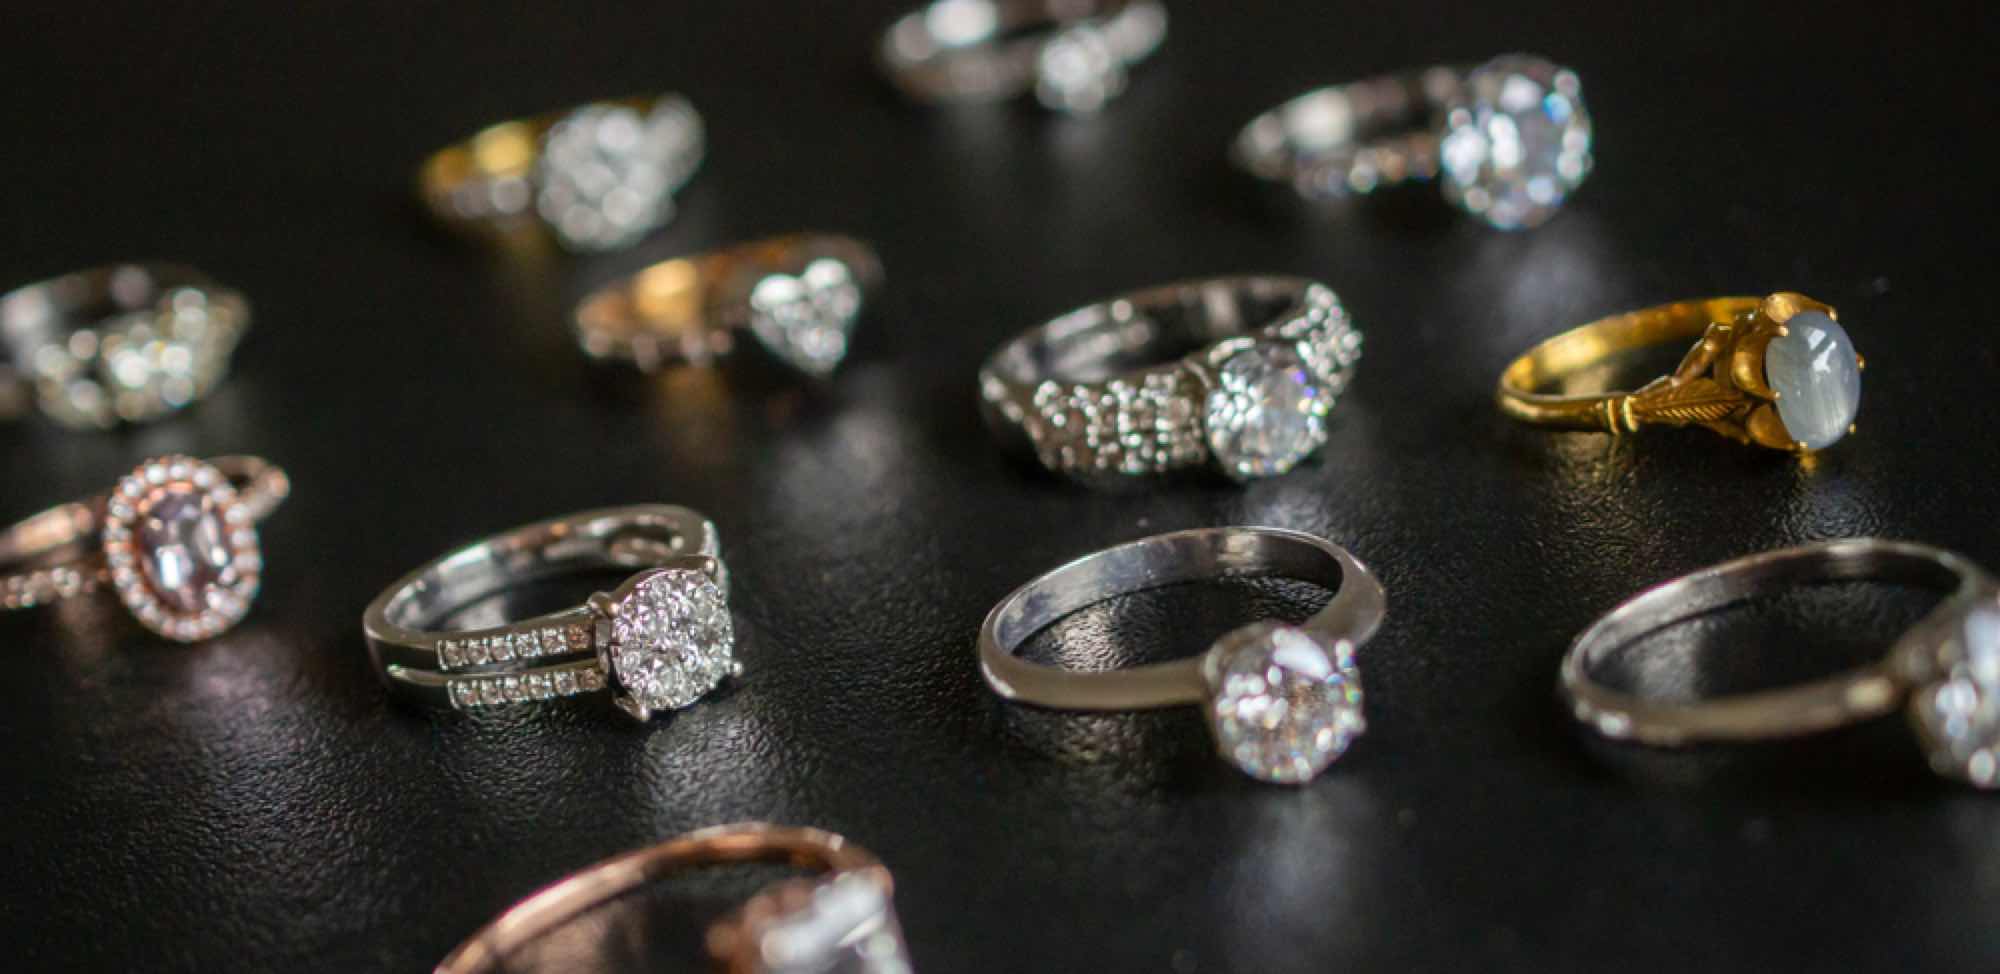 並べられた婚約指輪たち